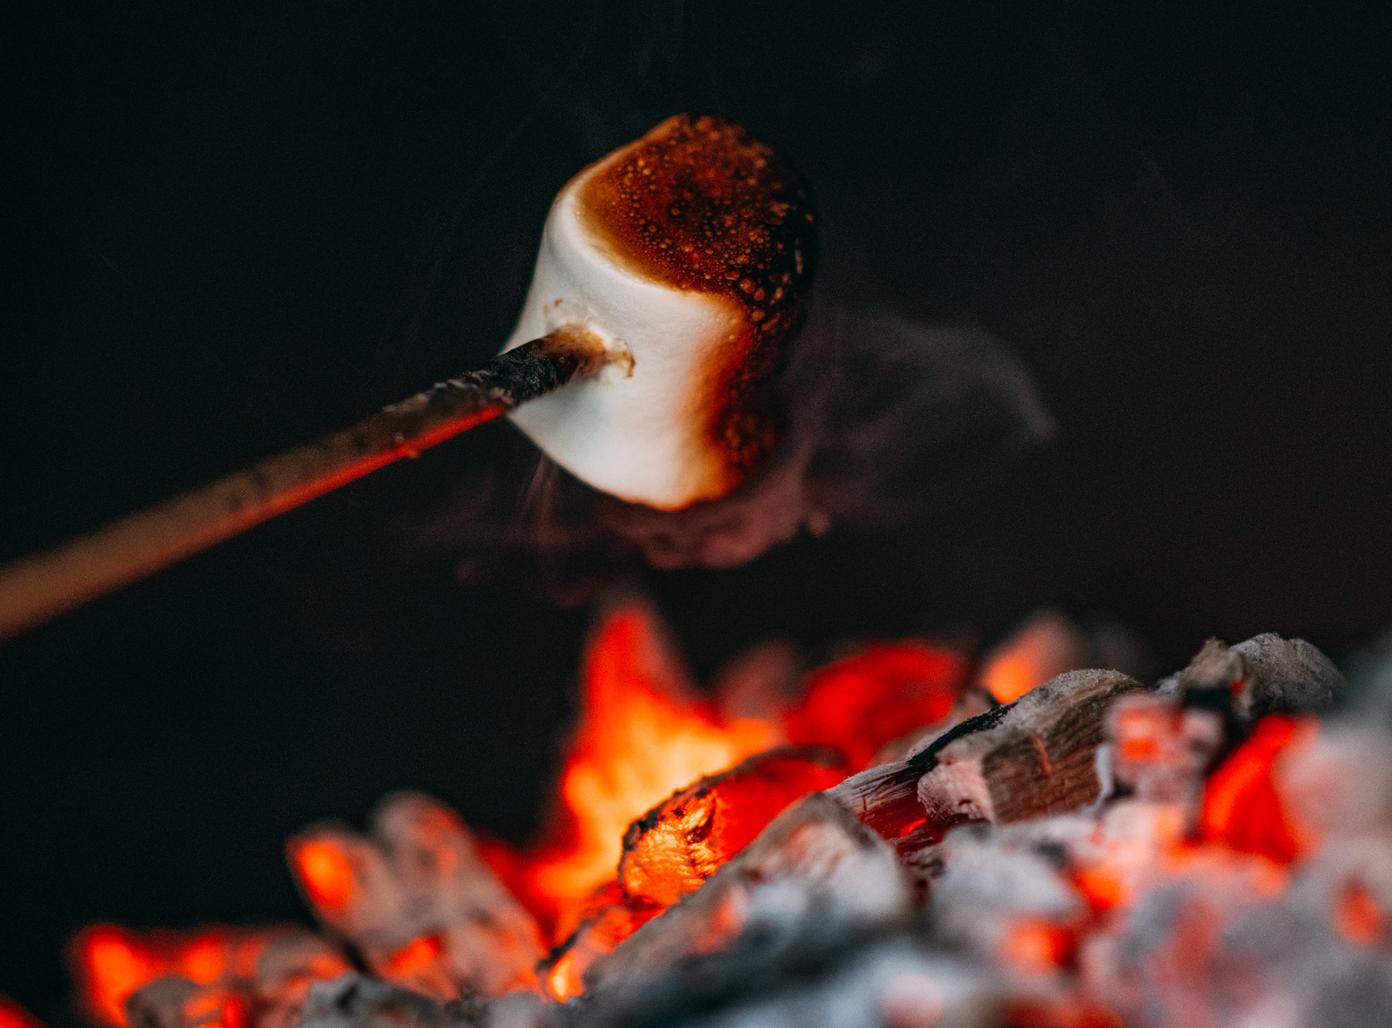 Marshmallow toasting on fire